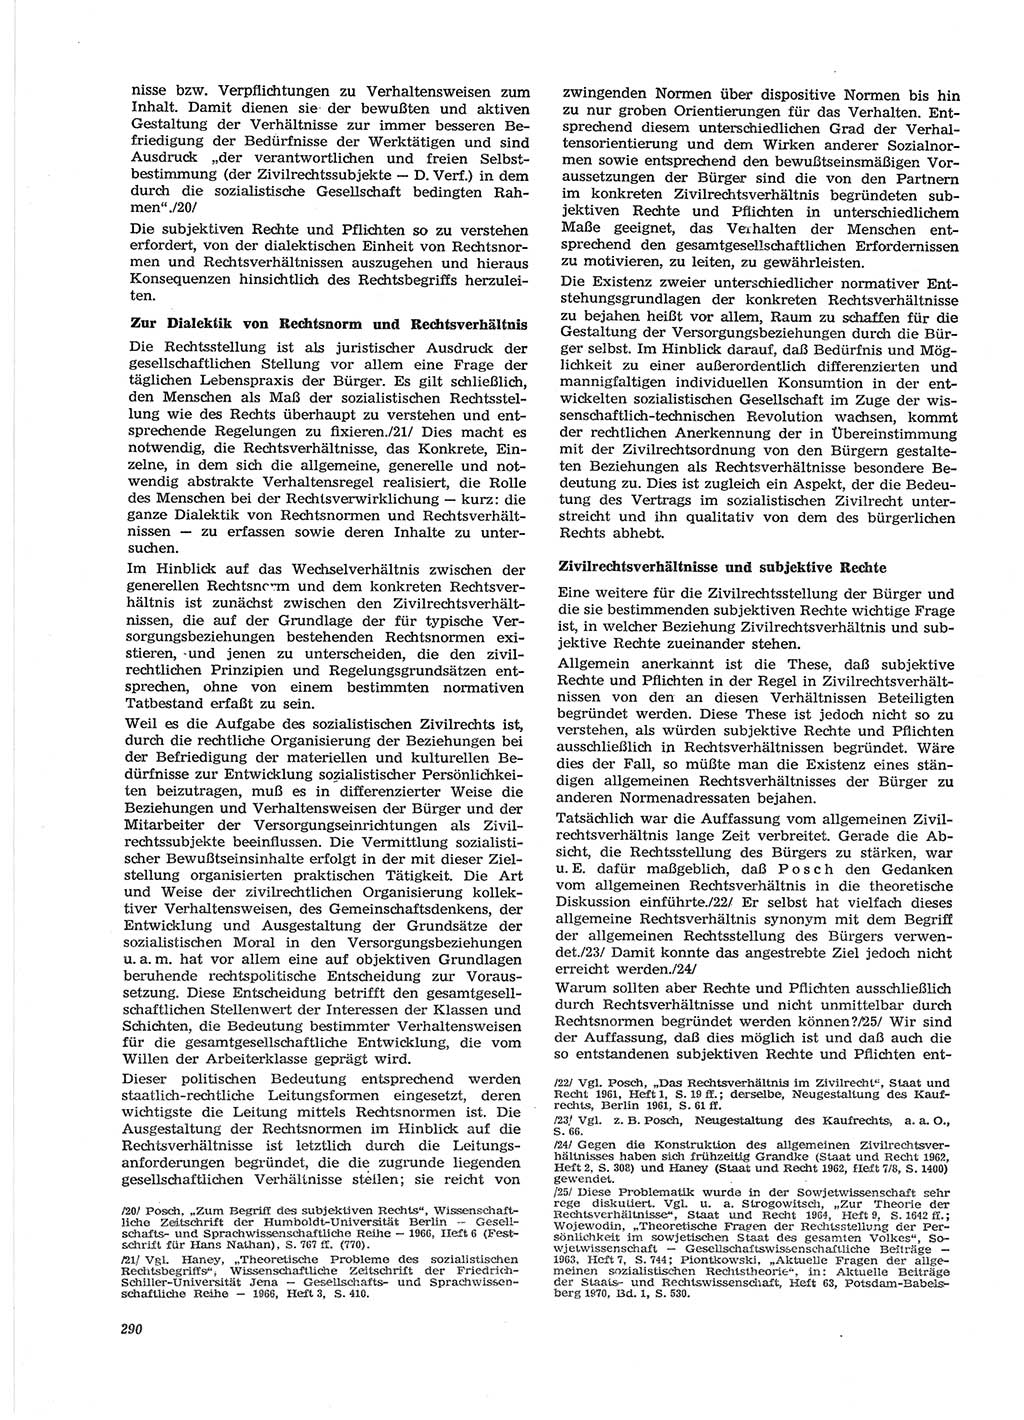 Neue Justiz (NJ), Zeitschrift für Recht und Rechtswissenschaft [Deutsche Demokratische Republik (DDR)], 28. Jahrgang 1974, Seite 290 (NJ DDR 1974, S. 290)